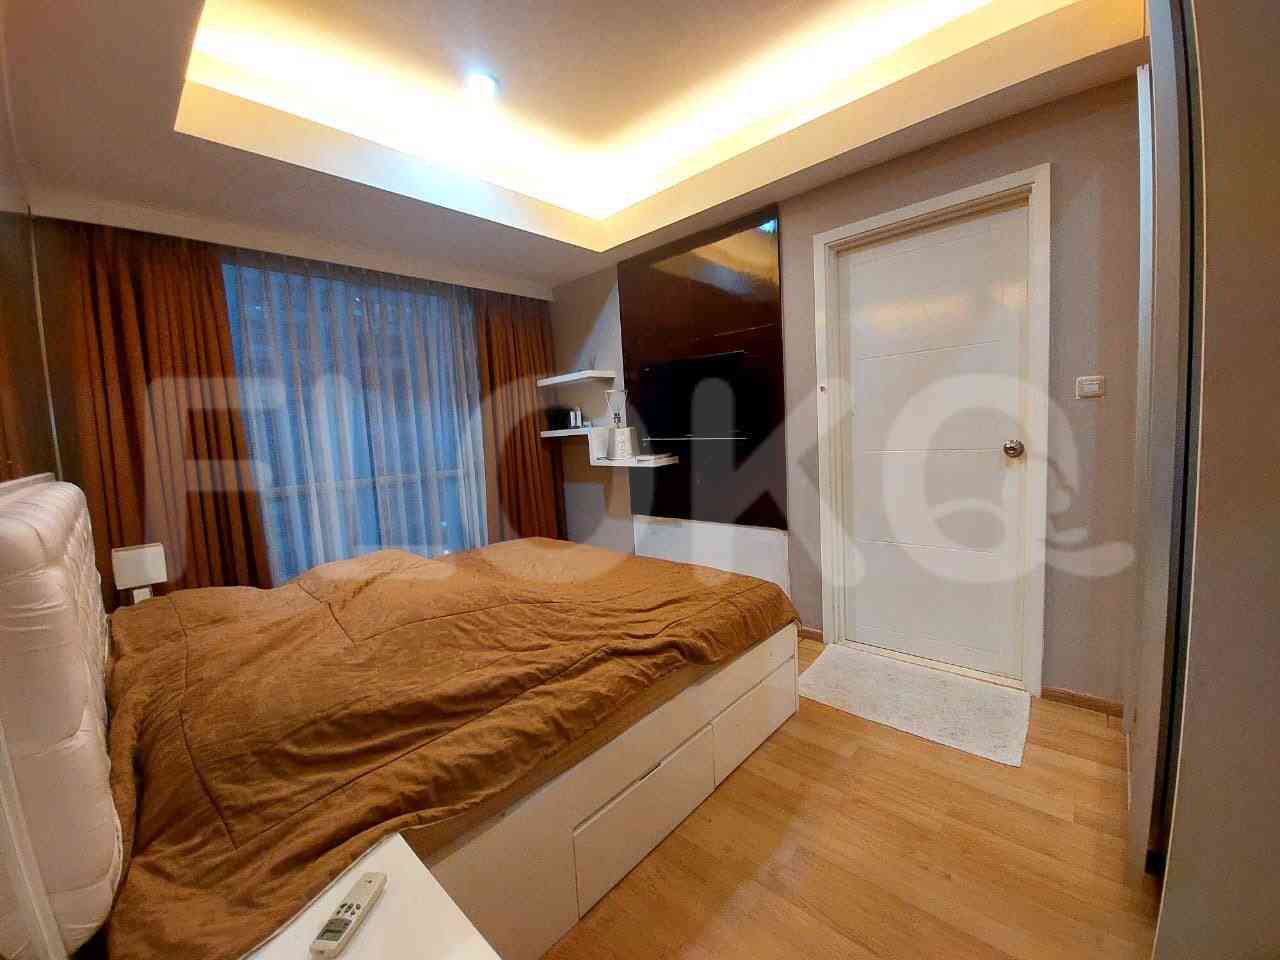 2 Bedroom on 14th Floor for Rent in Casa Grande - fte9d2 1